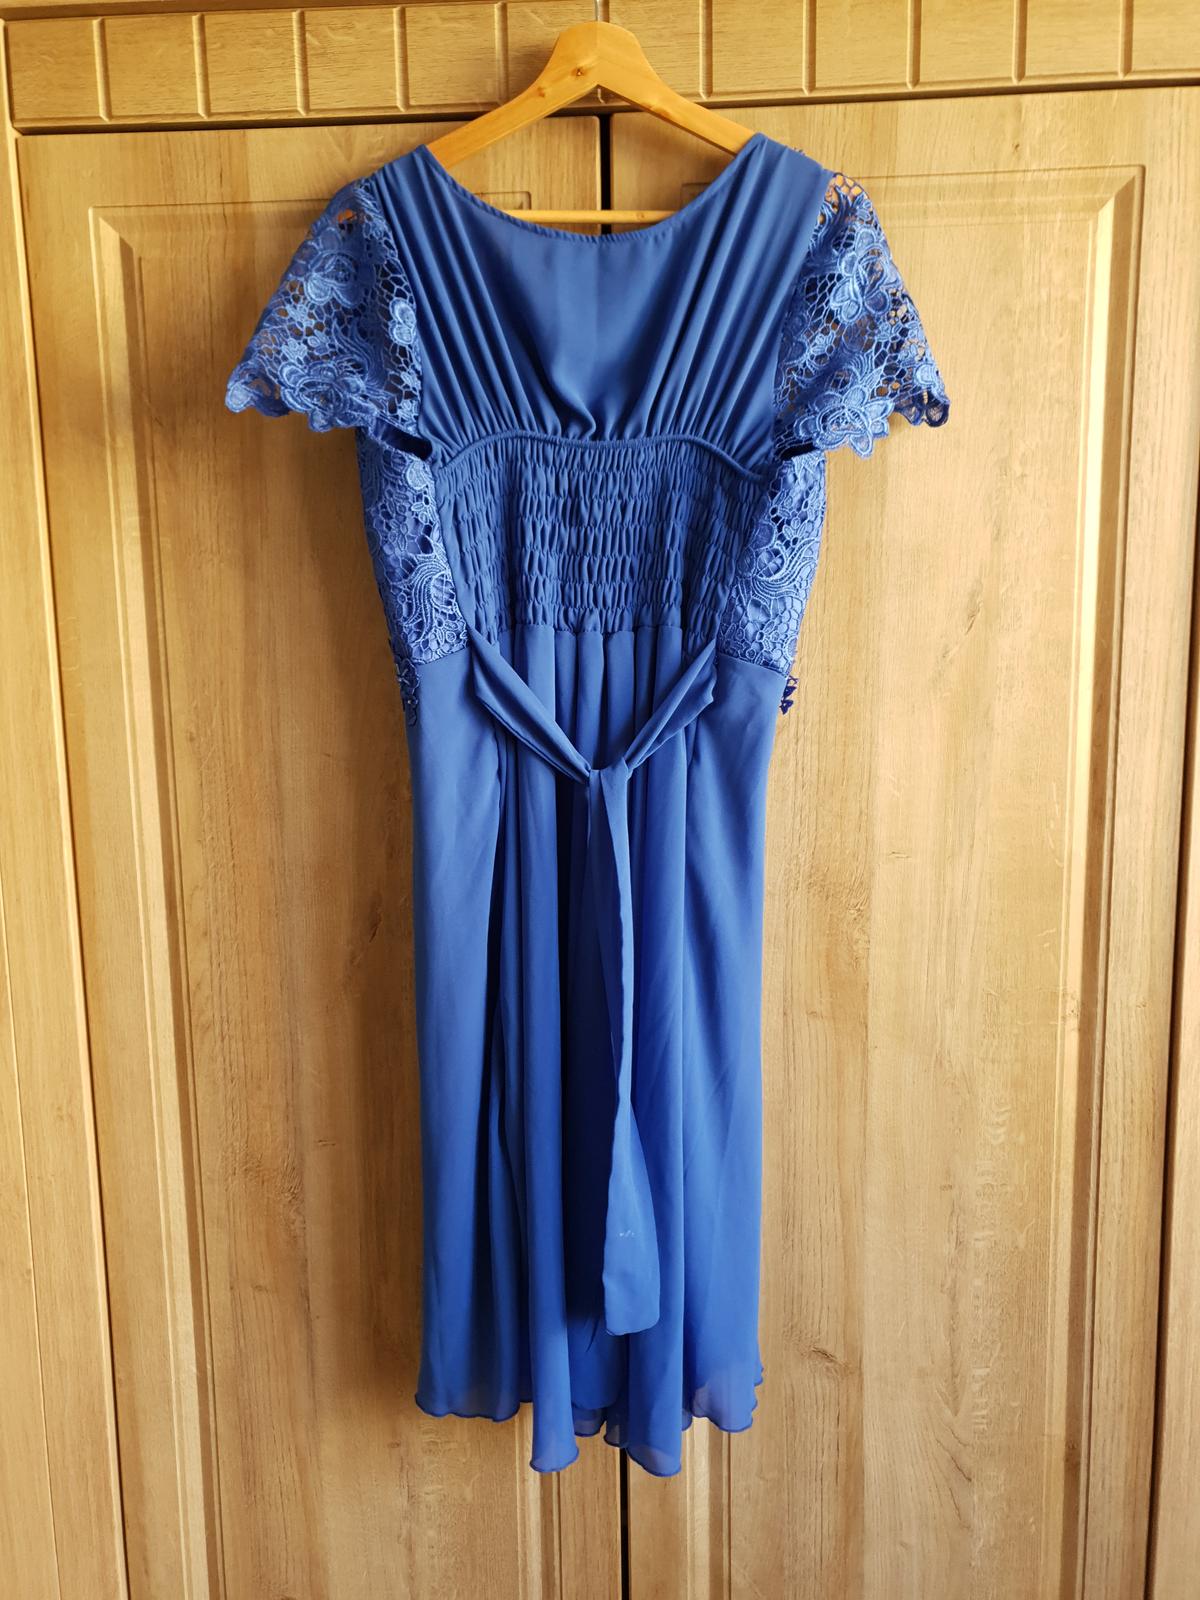 Šaty - kráľovská modrá - Obrázok č. 2